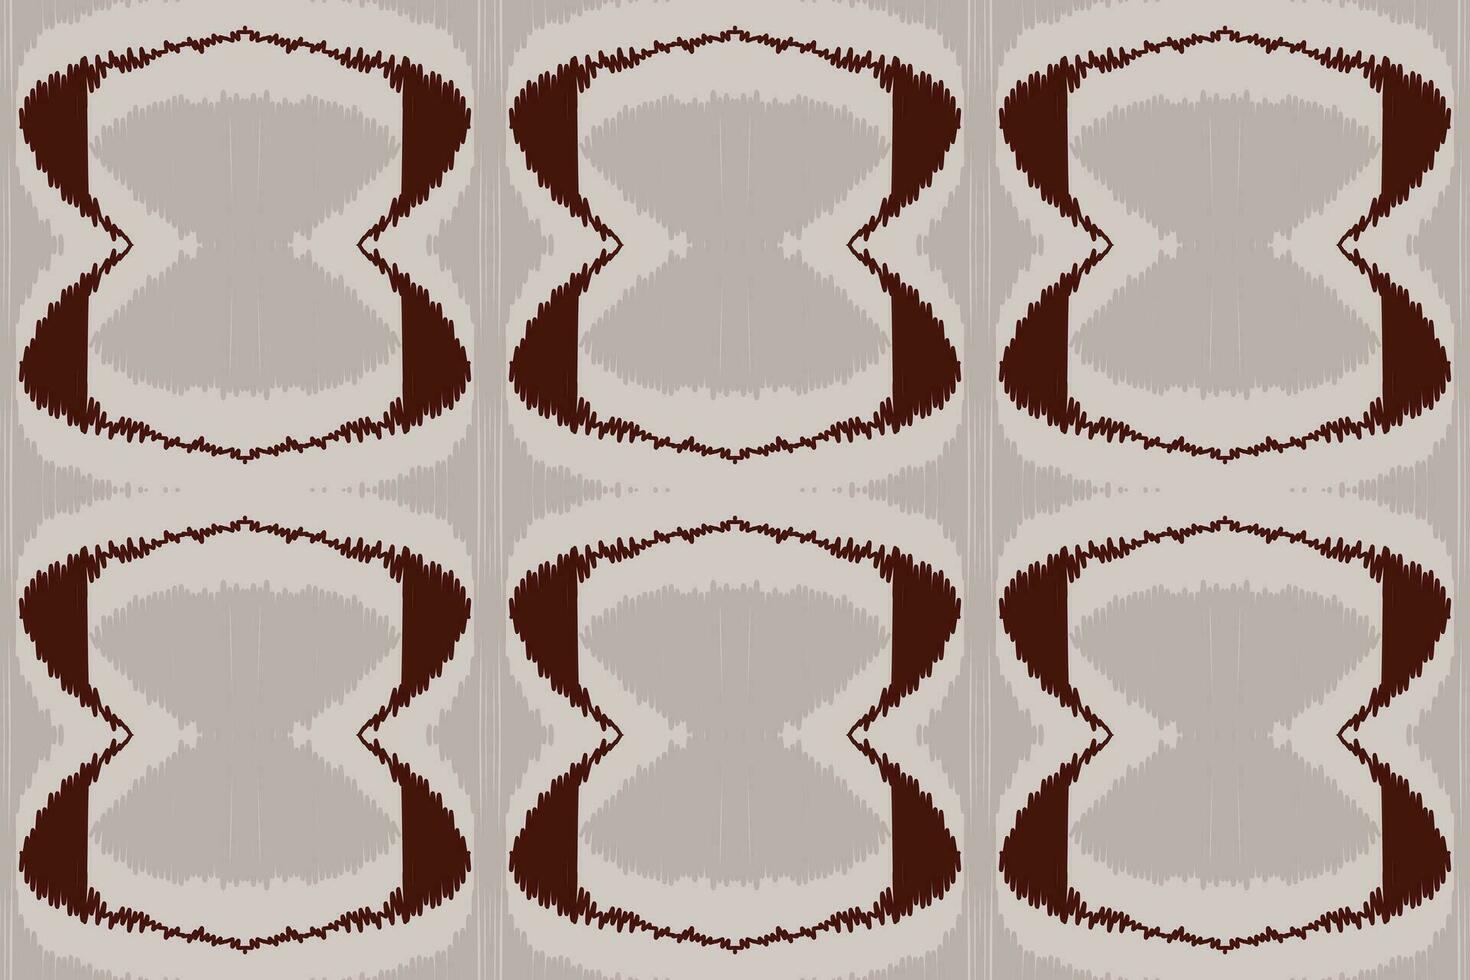 ikat-blumenpaisley-stickerei auf weißem hintergrund.geometrisches ethnisches orientalisches muster traditionell.aztekische stilabstrakte vektorillustration.design für textur,stoff,kleidung,verpackung,dekoration,sarong. vektor